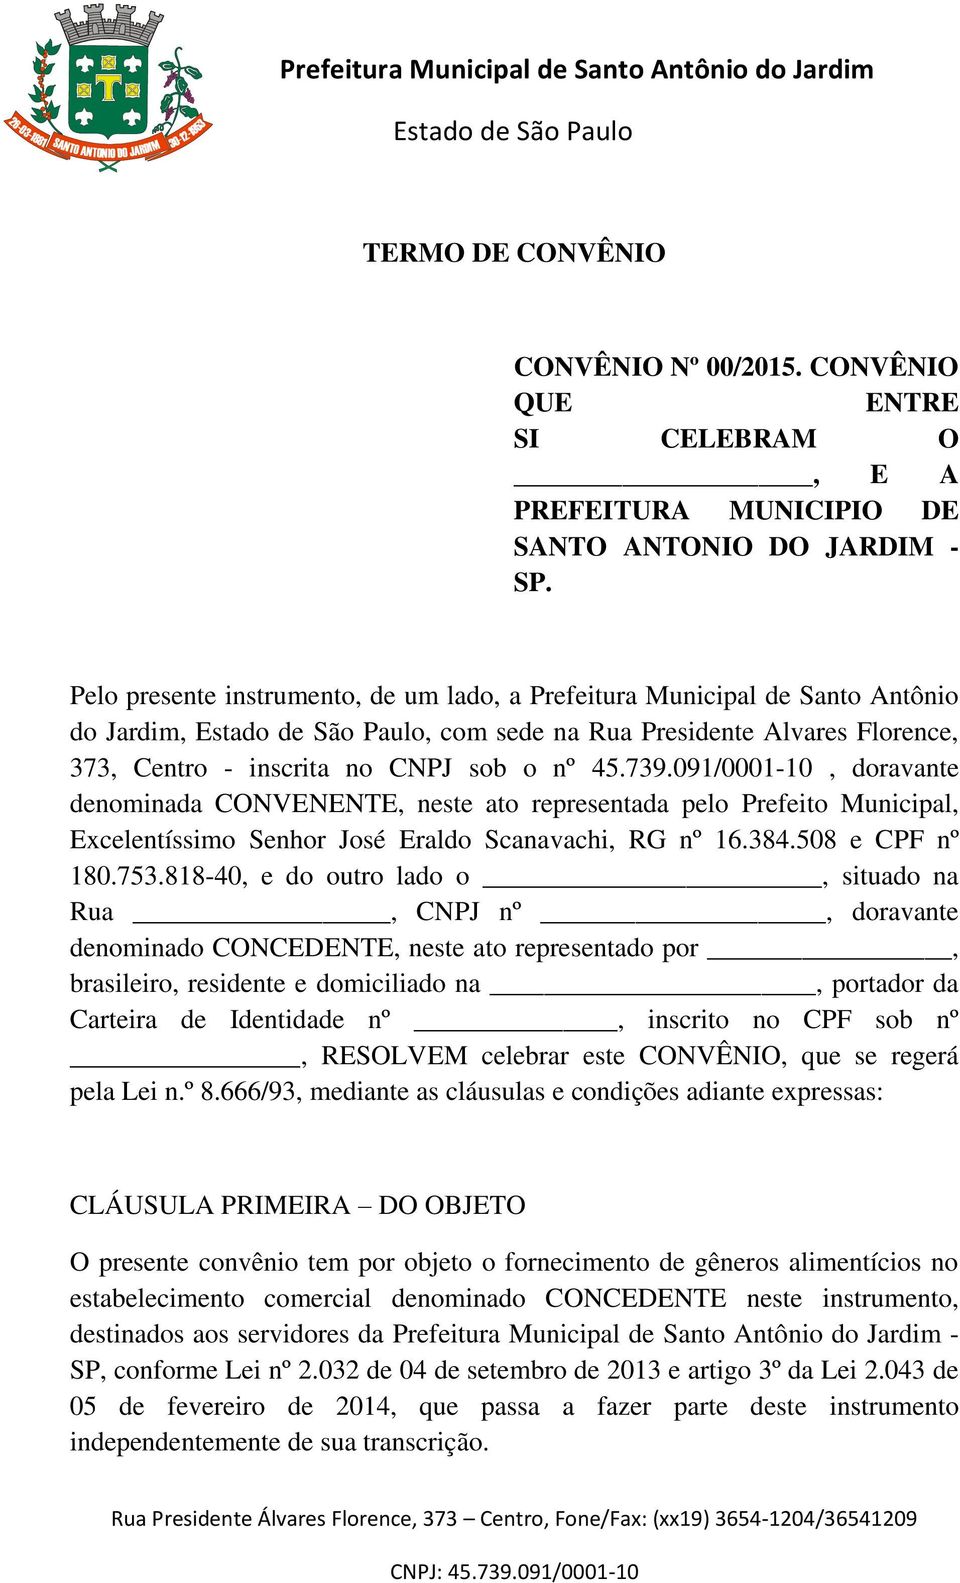 091/0001-10, doravante denominada CONVENENTE, neste ato representada pelo Prefeito Municipal, Excelentíssimo Senhor José Eraldo Scanavachi, RG nº 16.384.508 e CPF nº 180.753.